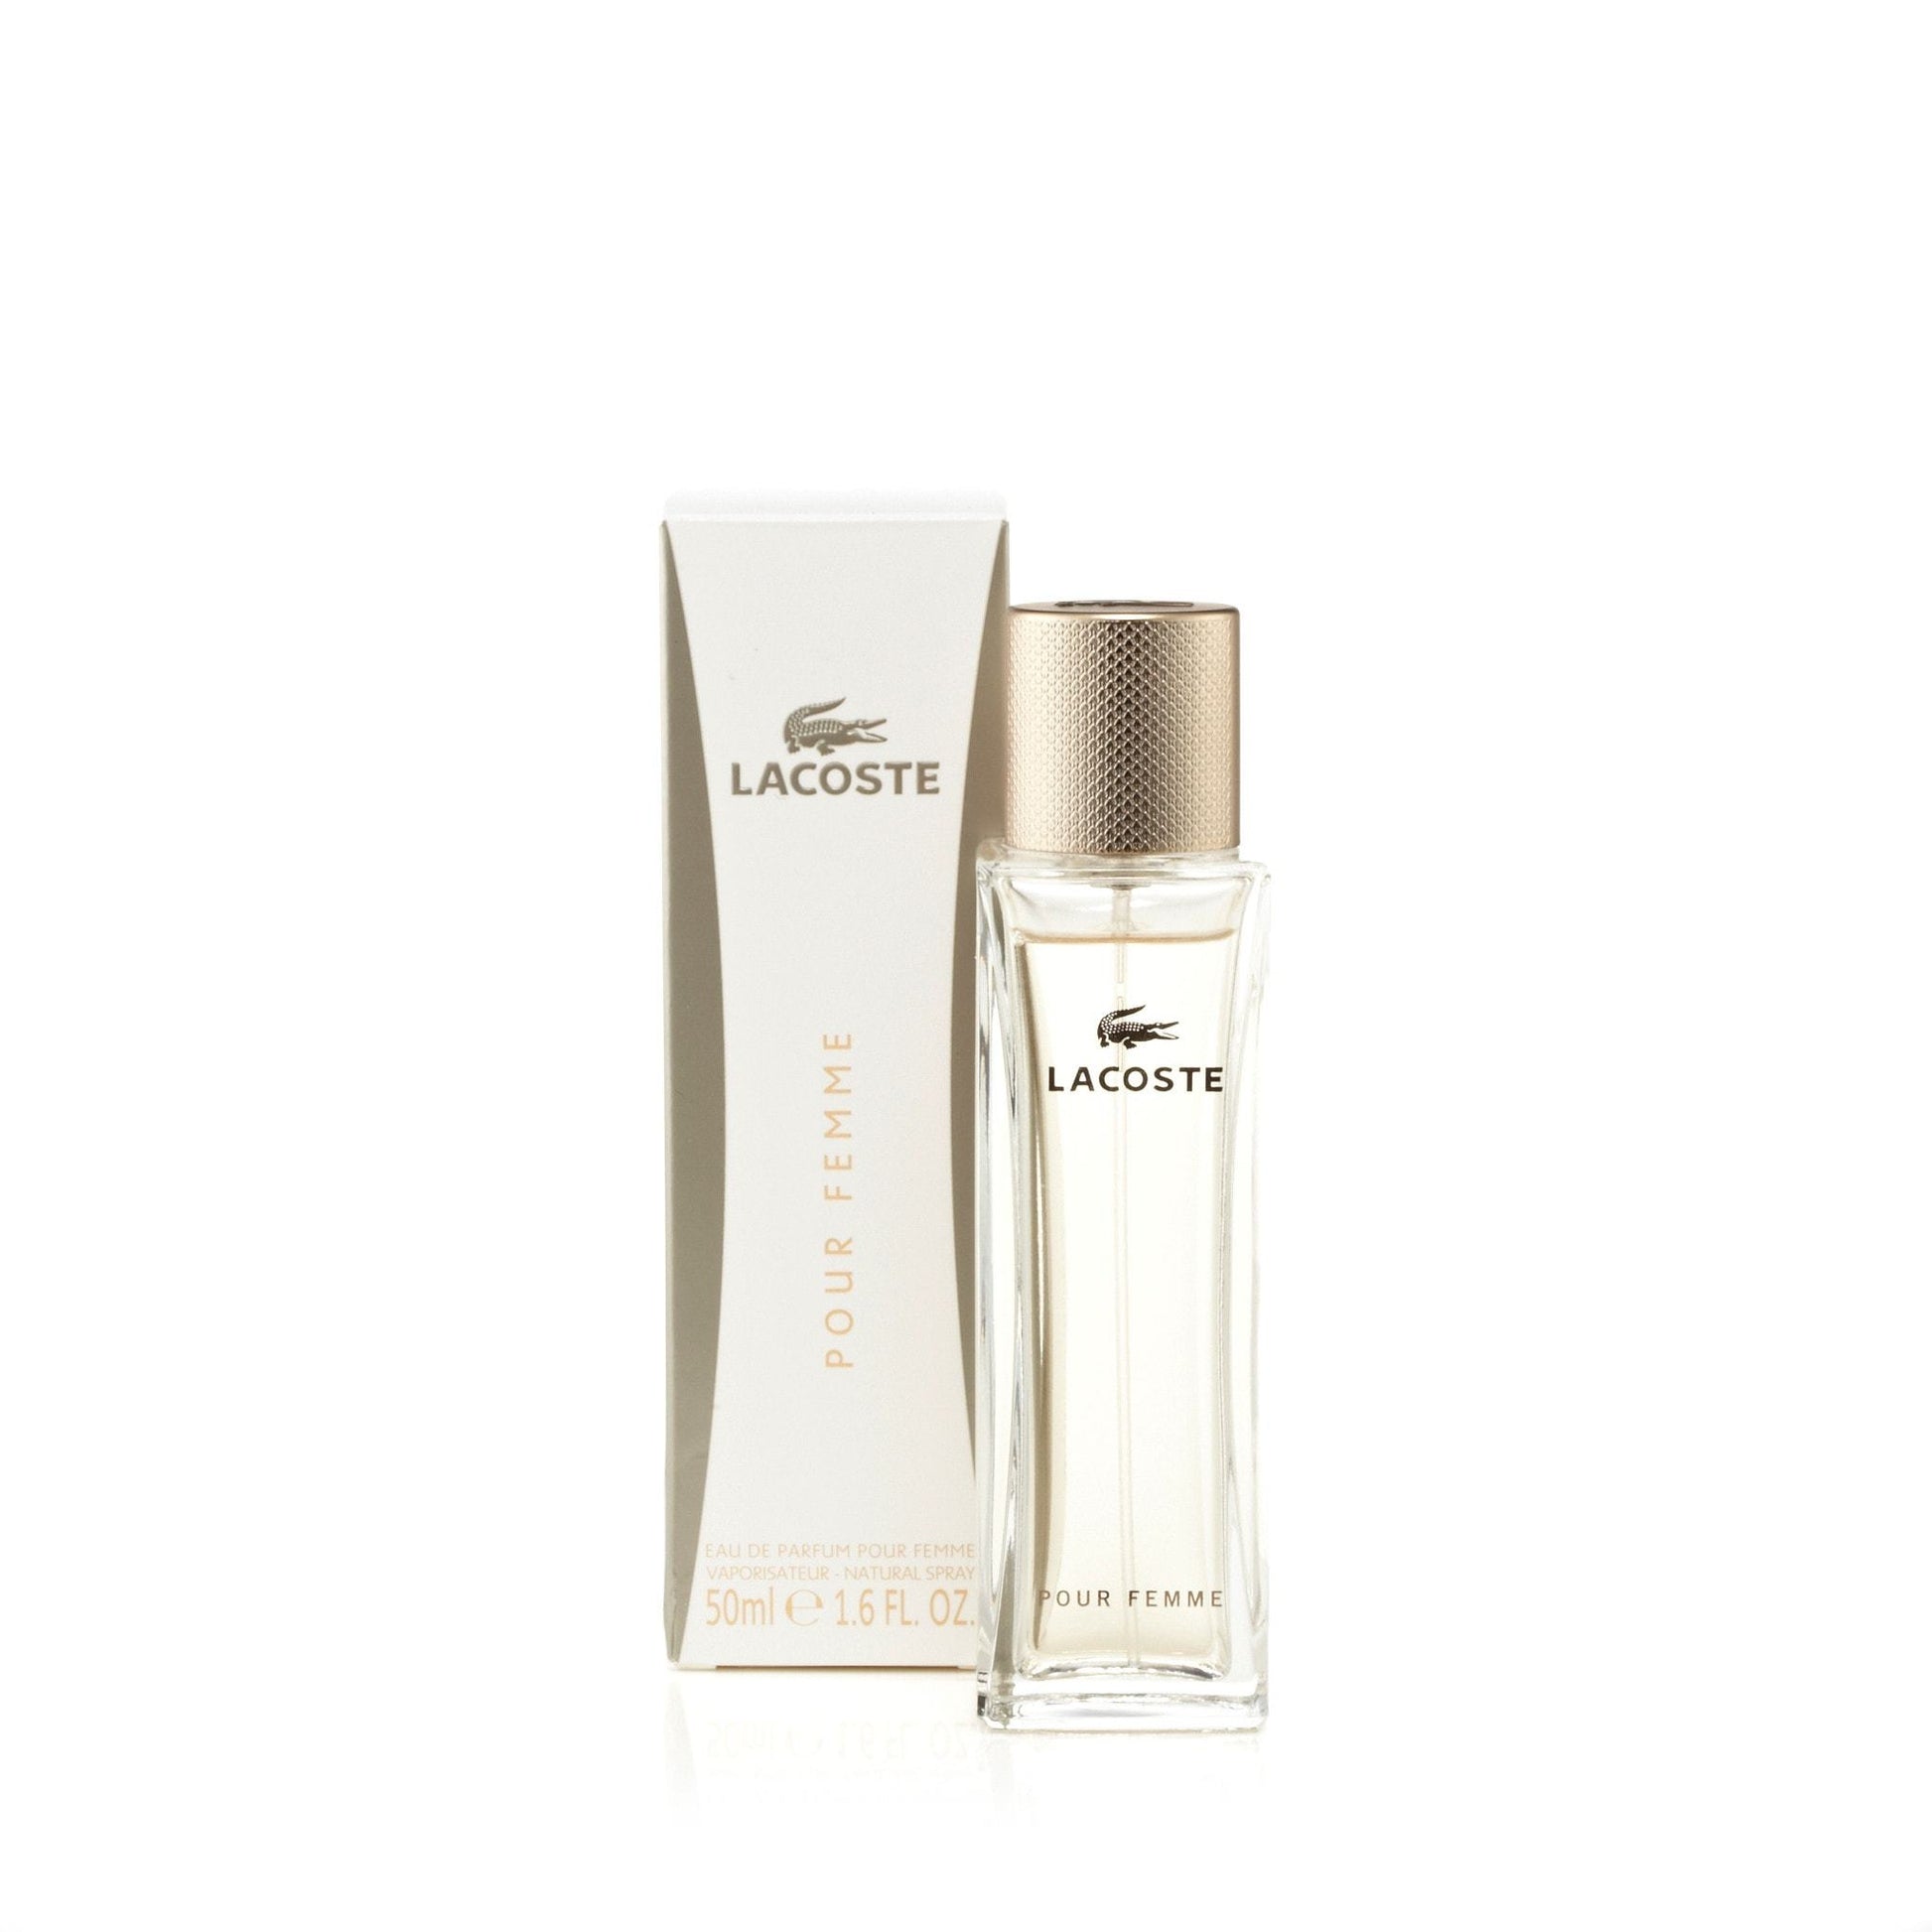 Lacoste Pour Femme Eau de Parfum Spray for Women by Lacoste, Product image 3